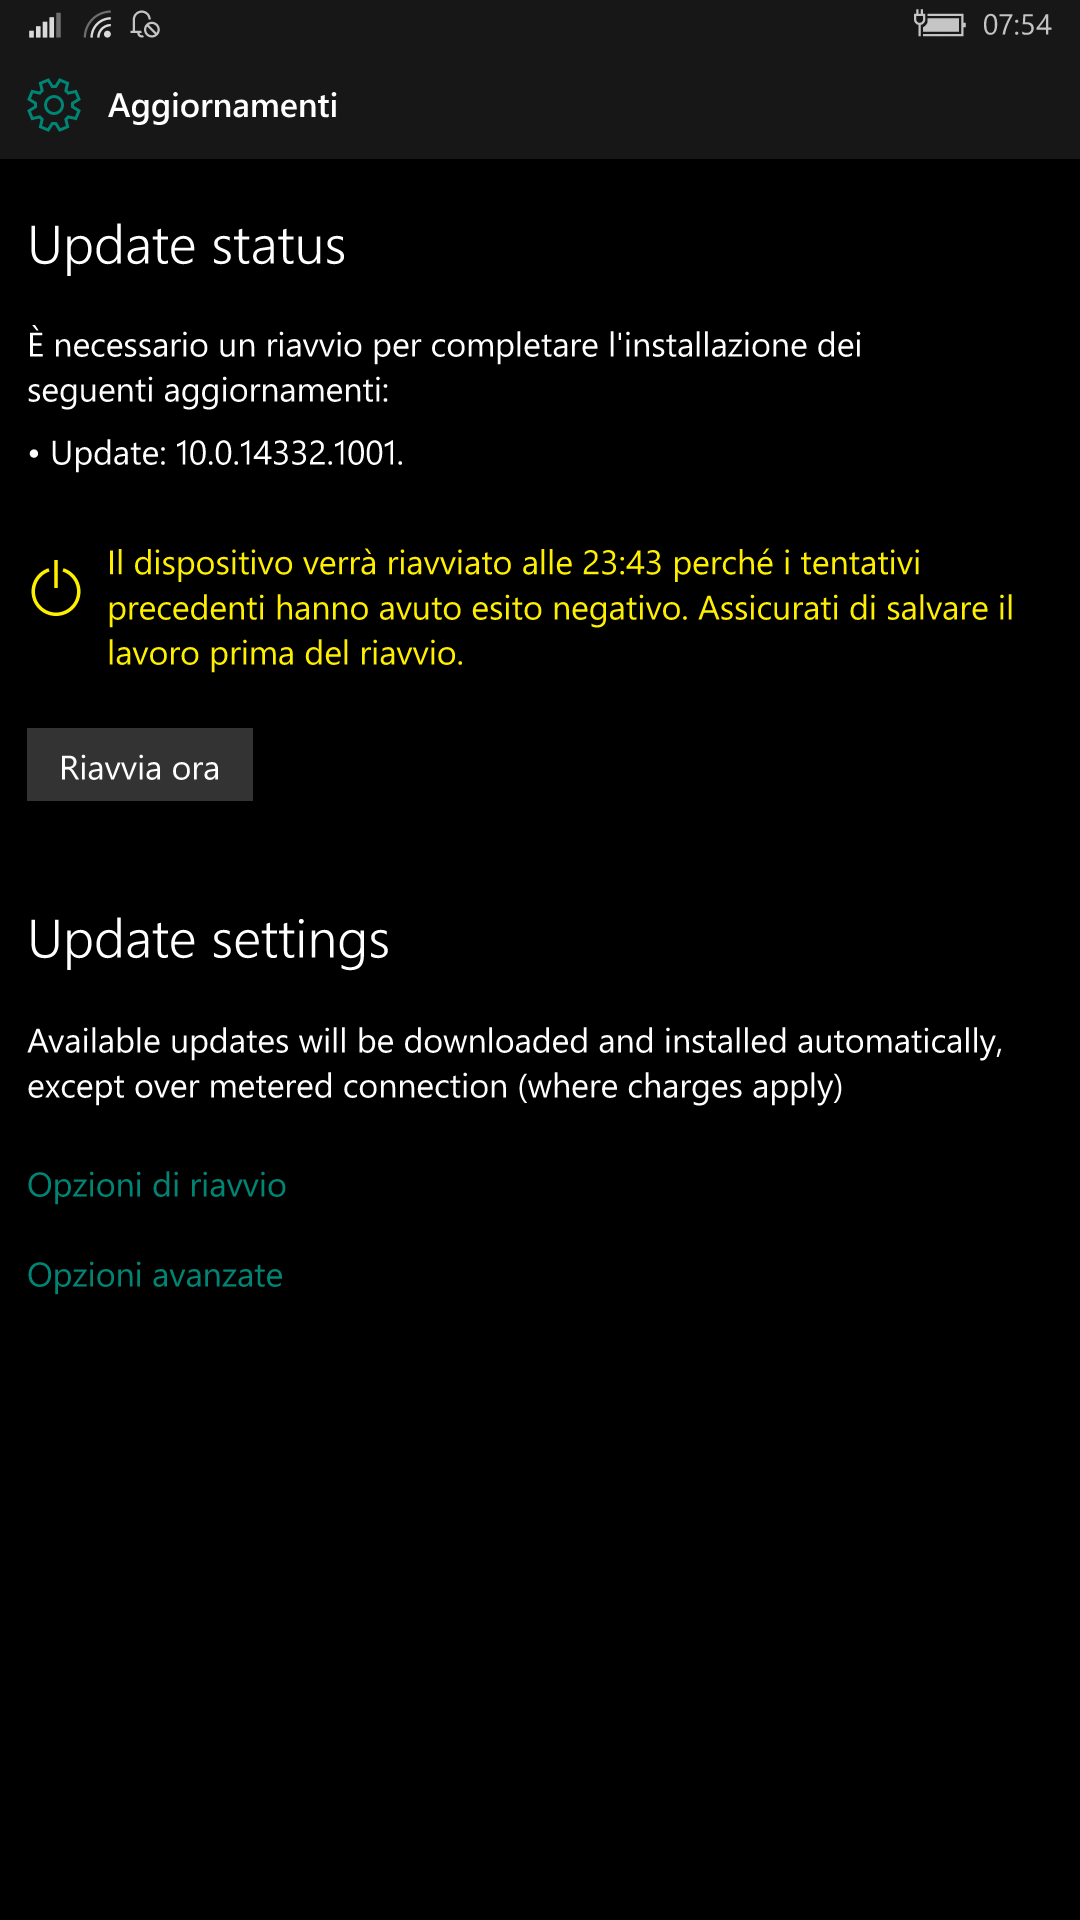 Aggiornamenti - Windows 10 Mobile 14332.1001